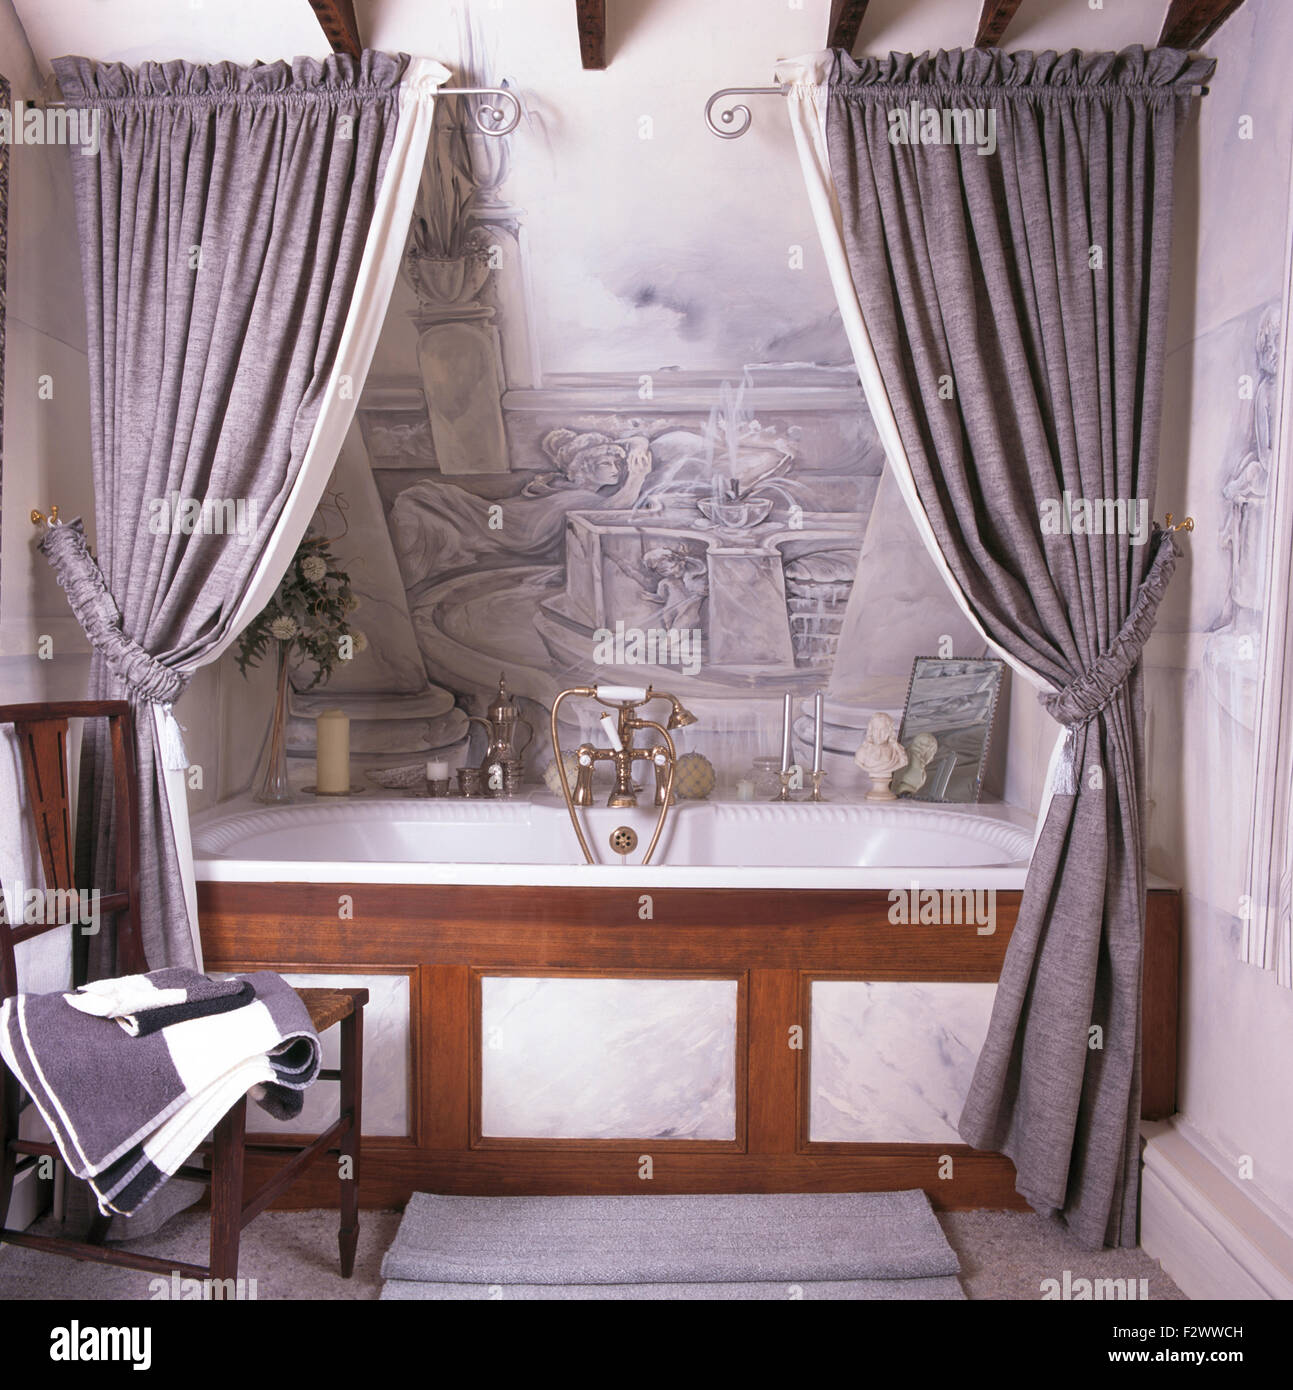 Tende di colore grigio sulla vasca da bagno in novanta bagno con  trompe-l'oeil murale dipinto sulla parete sopra il bagno Foto stock - Alamy